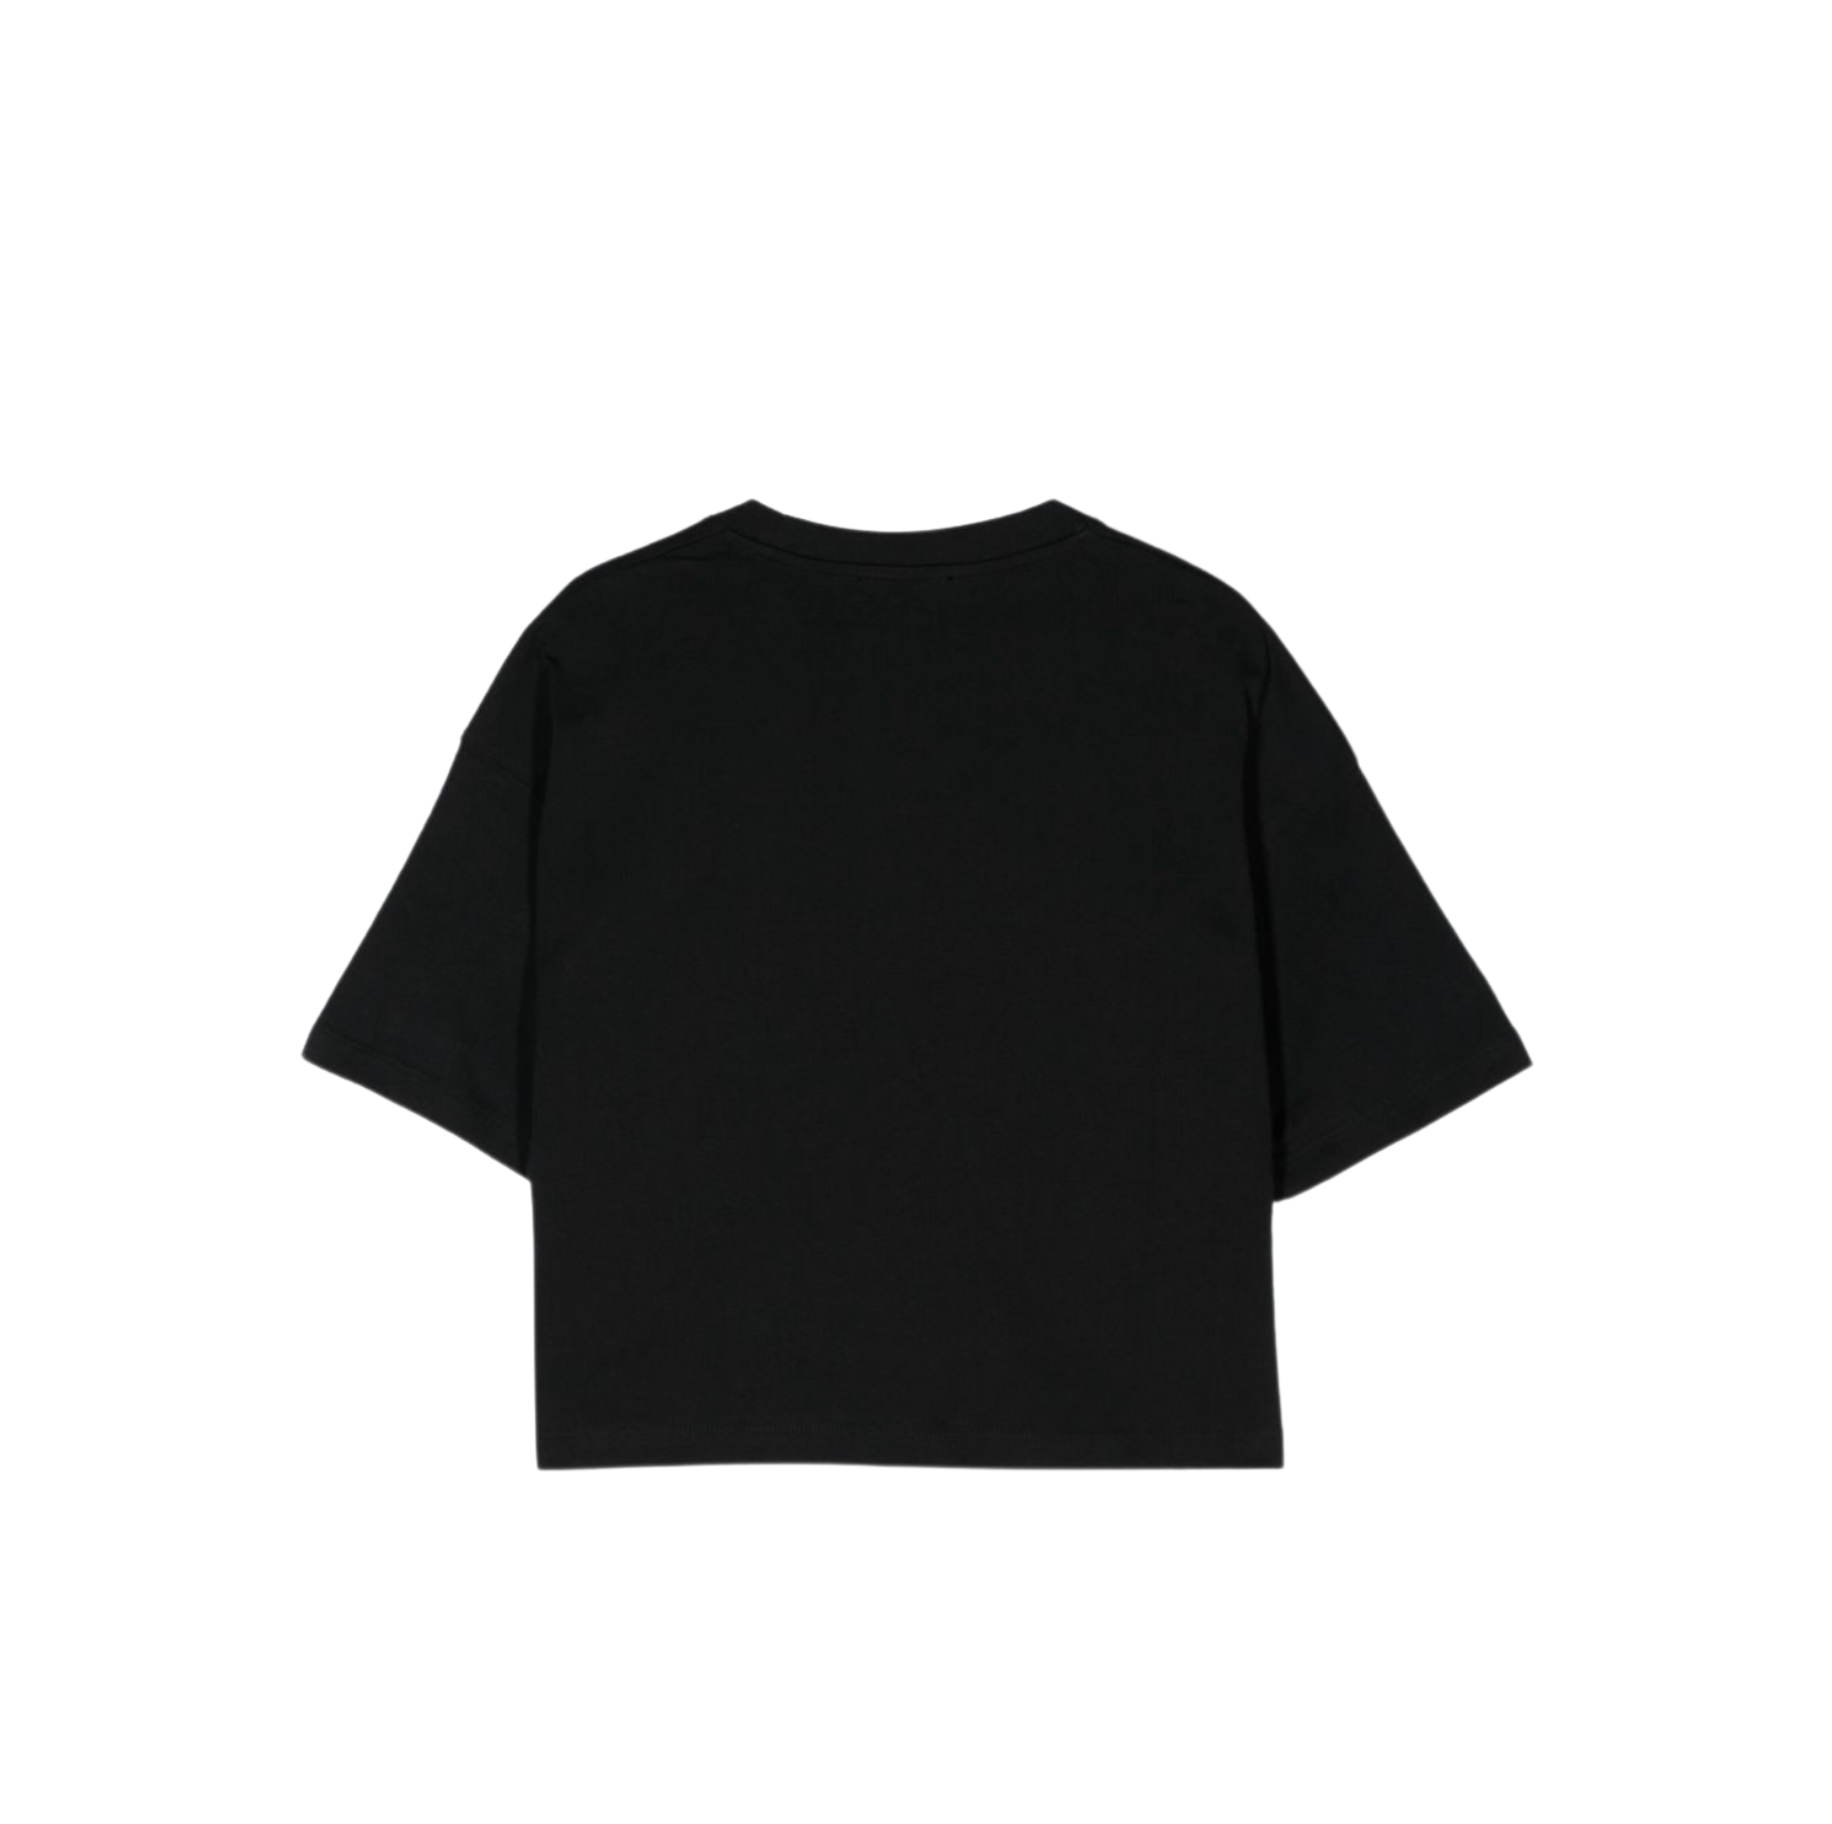 LES COYOTES DE PARIS - T-shirt noir - 10 ans